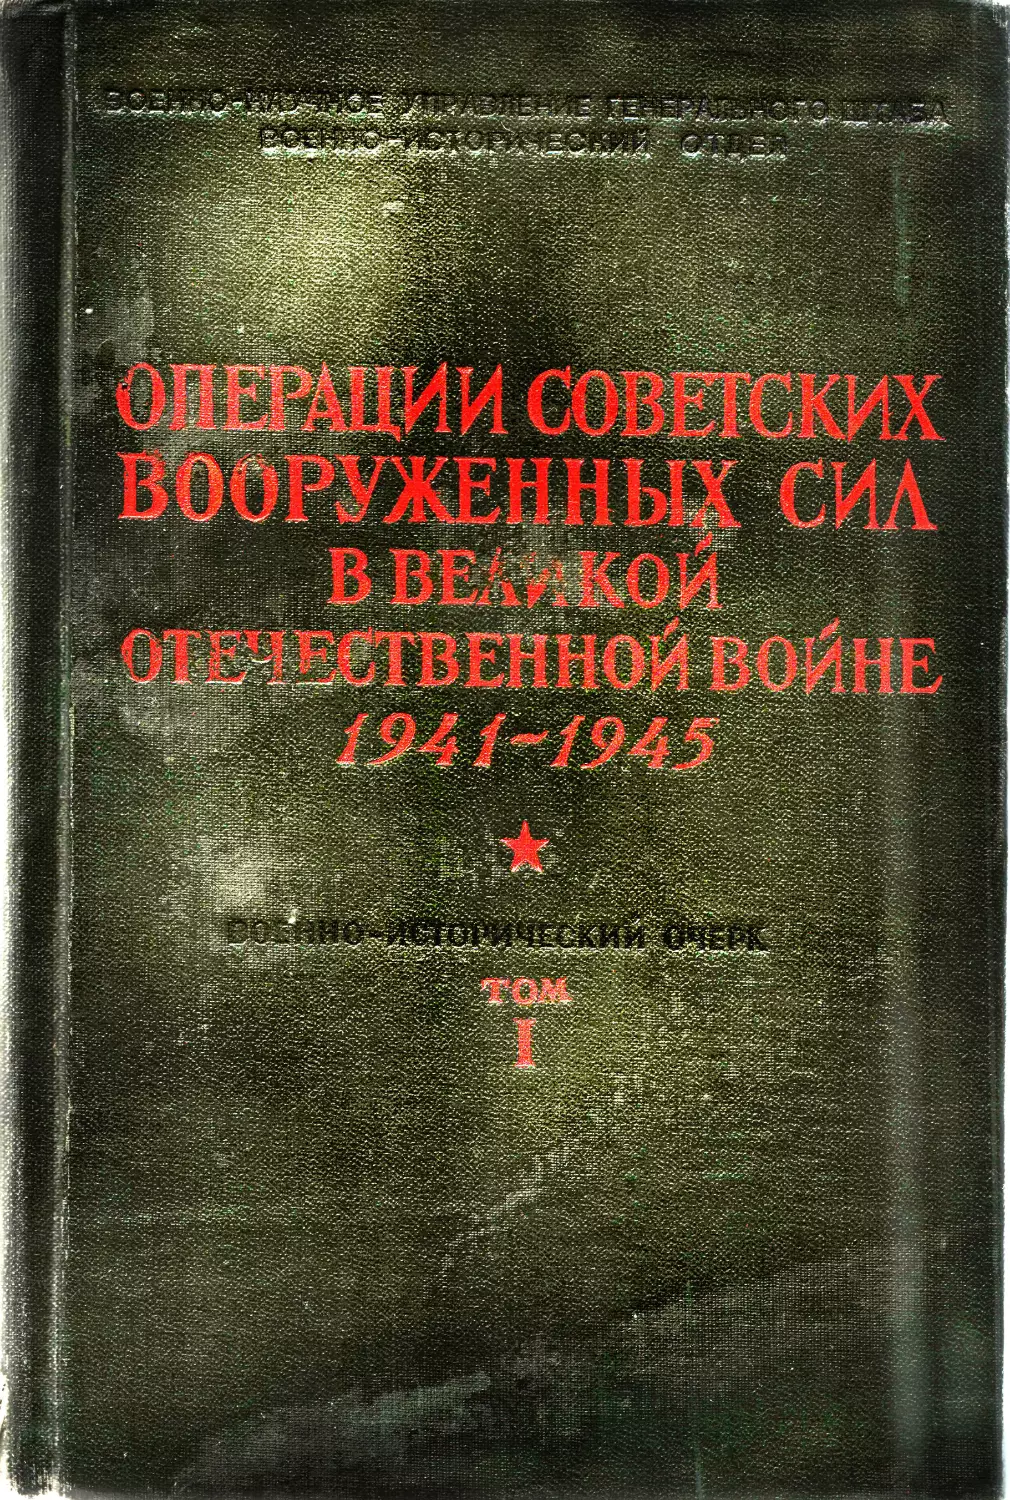 10 советских операций. Операции Вооруженных сил СССР книга.